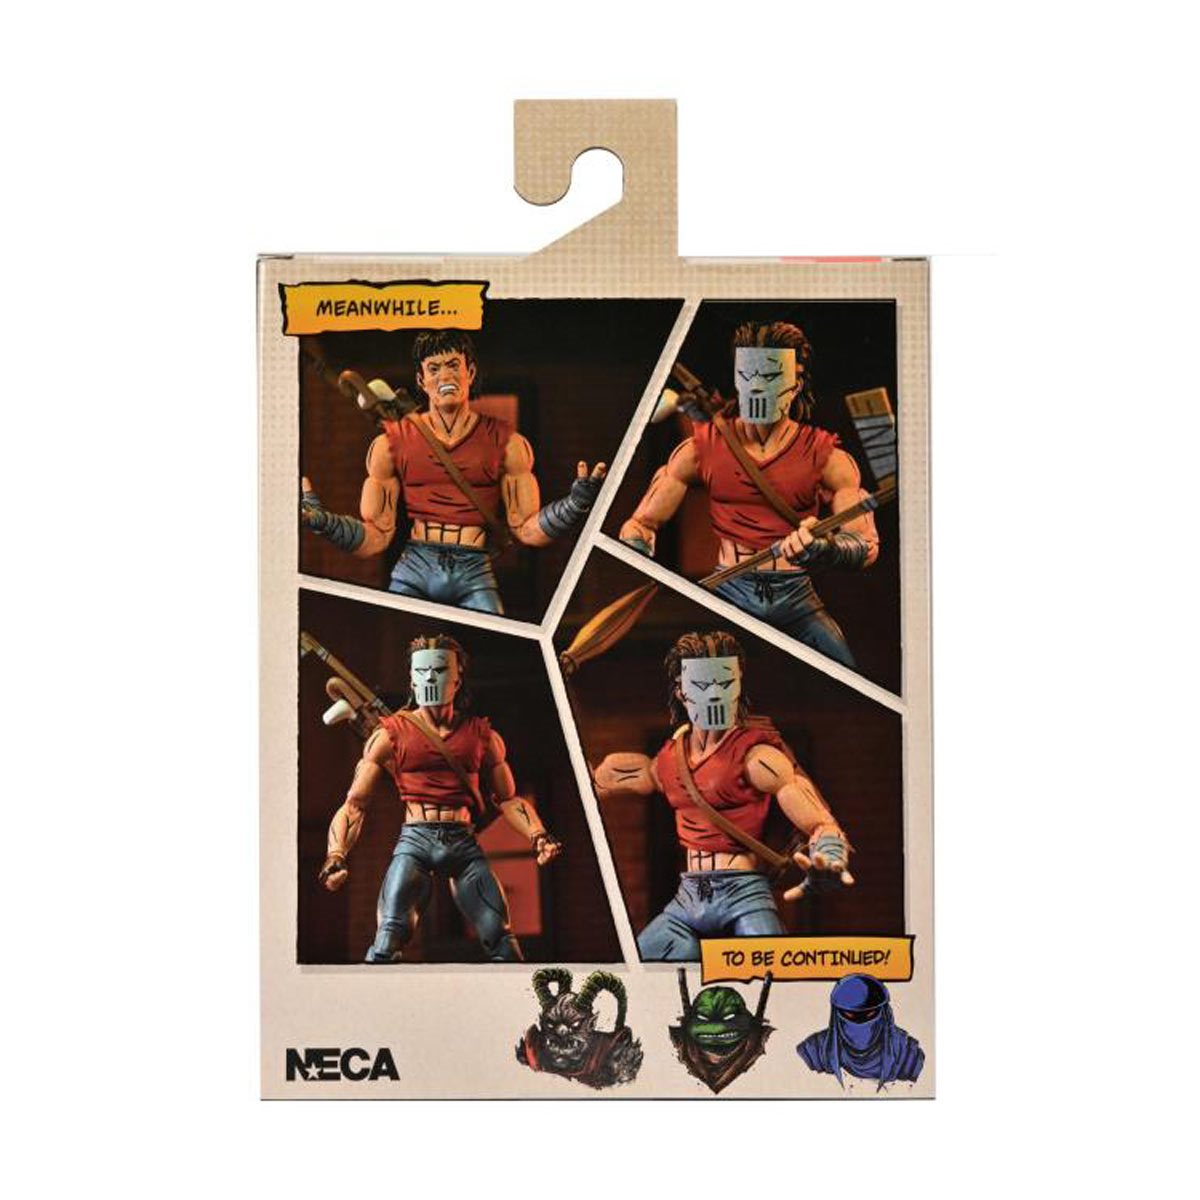 TMNT - Mirage Comics Casey Jones Red Shirt Version 7-Inch Action Figure